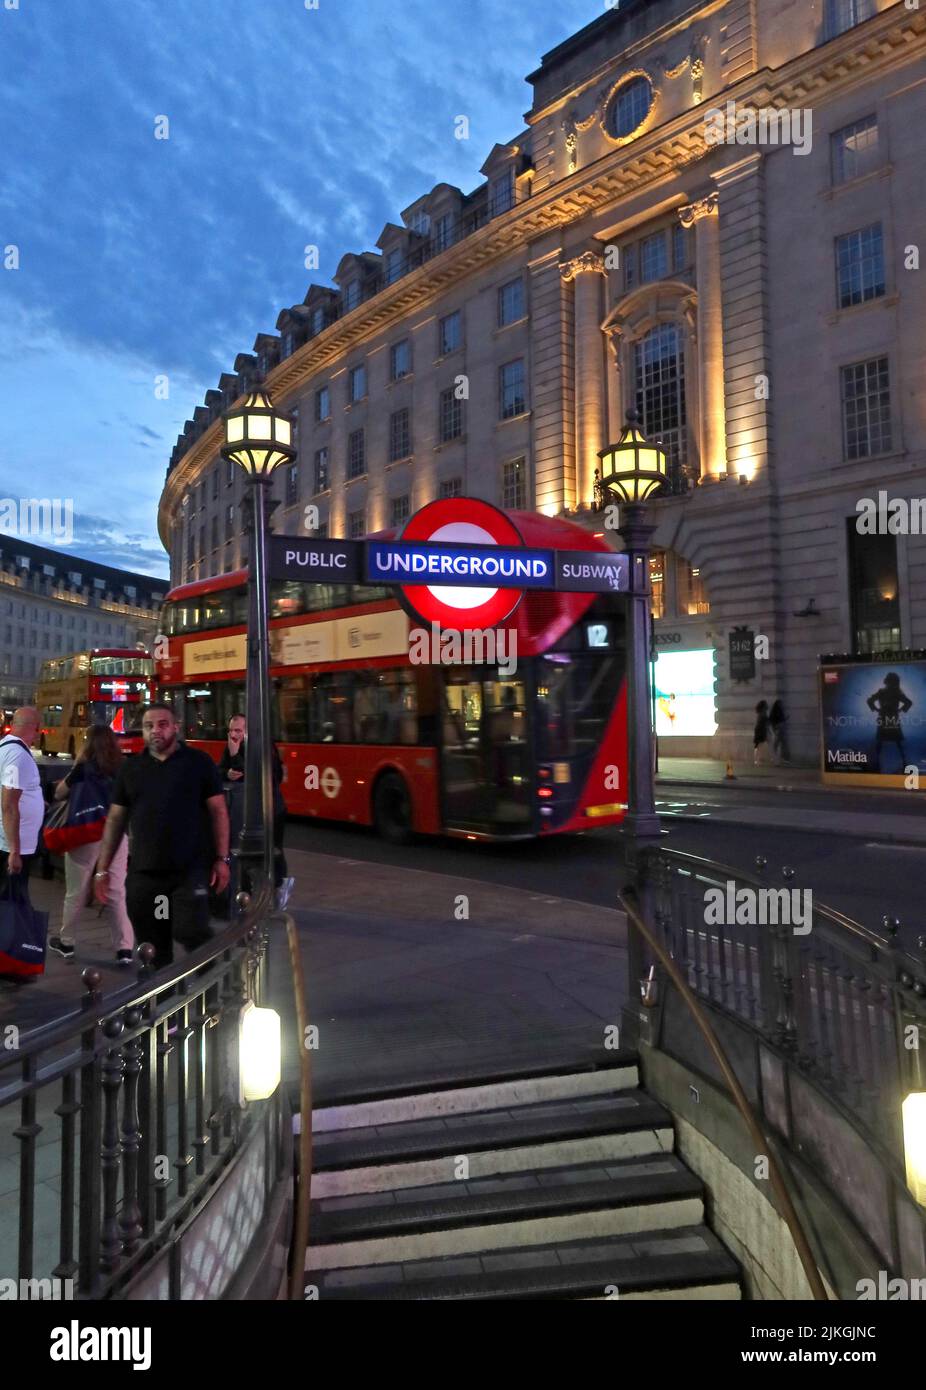 London Underground-Schilder in der Abenddämmerung im Zentrum von London, Piccadilly und Regent Street, London, England, UK, W1B 3AB Stockfoto